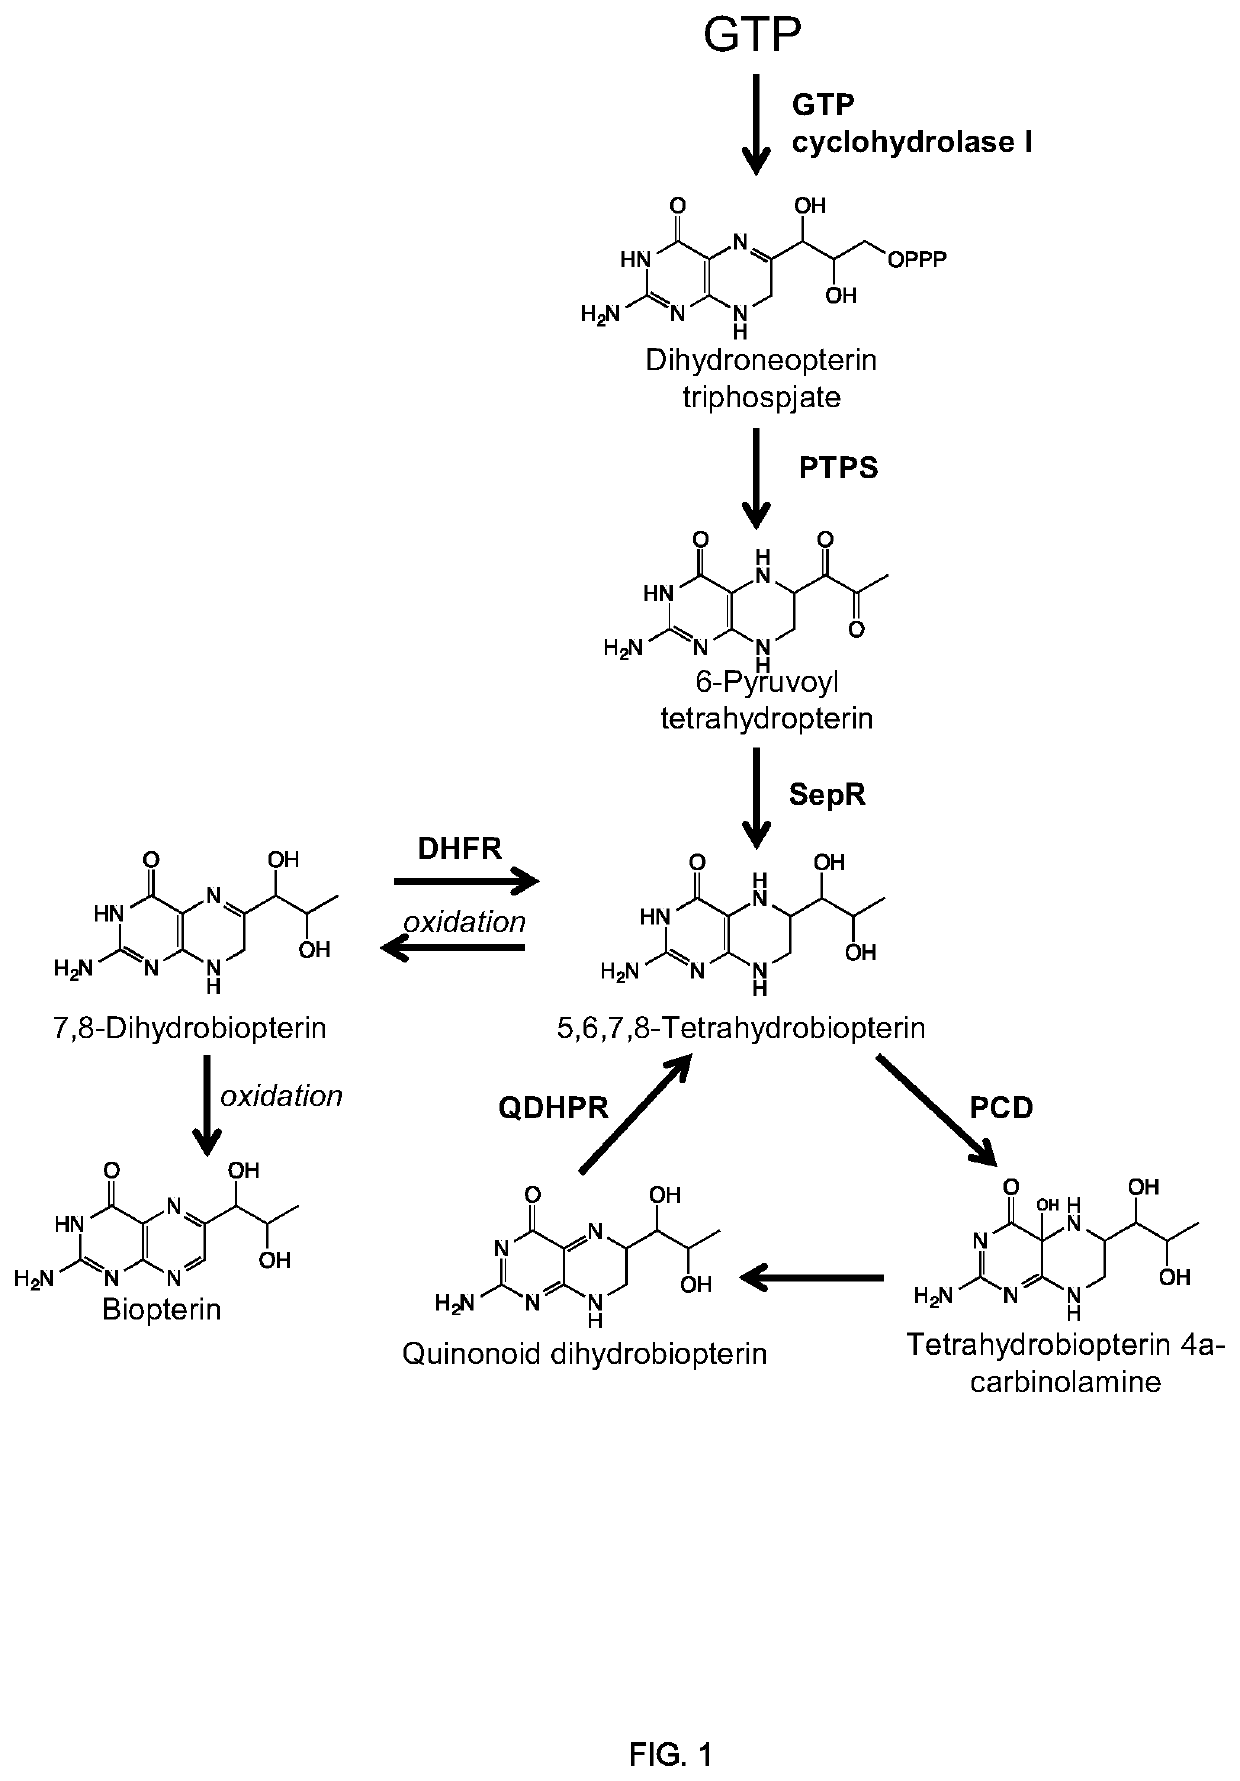 Methods of producing nor-opioid and nal-opioid benzylisoquinoline alkaloids